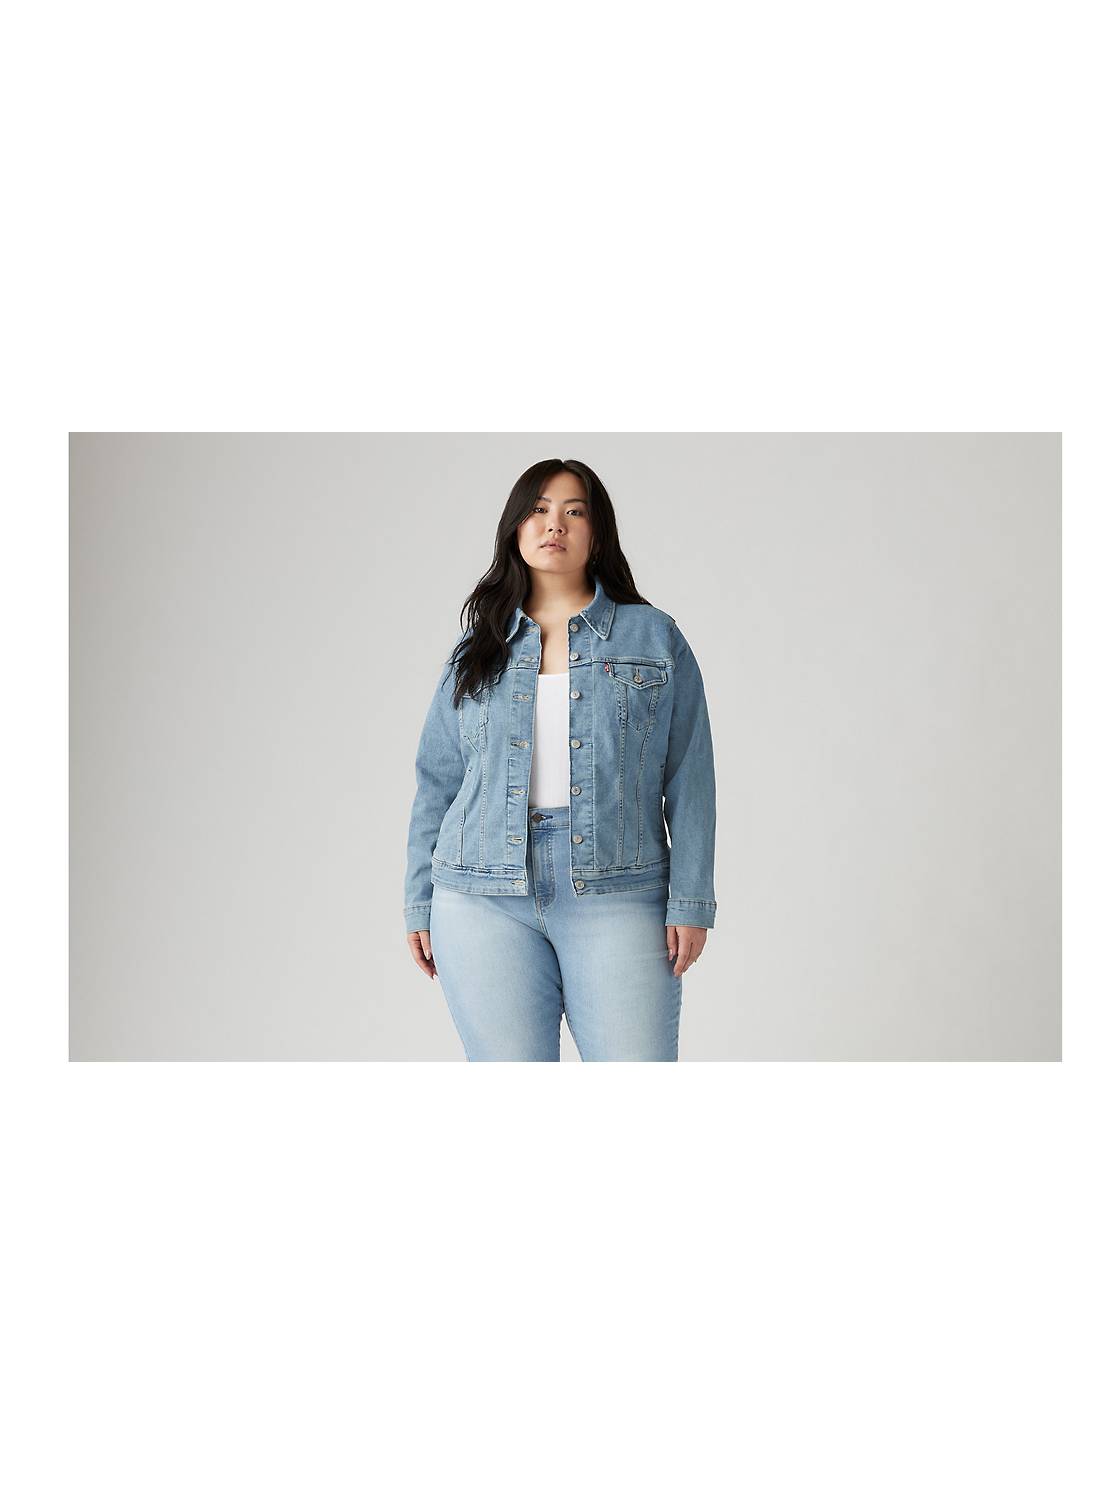 Plus Size Denim Jackets - Shop Women's Jean Jackets